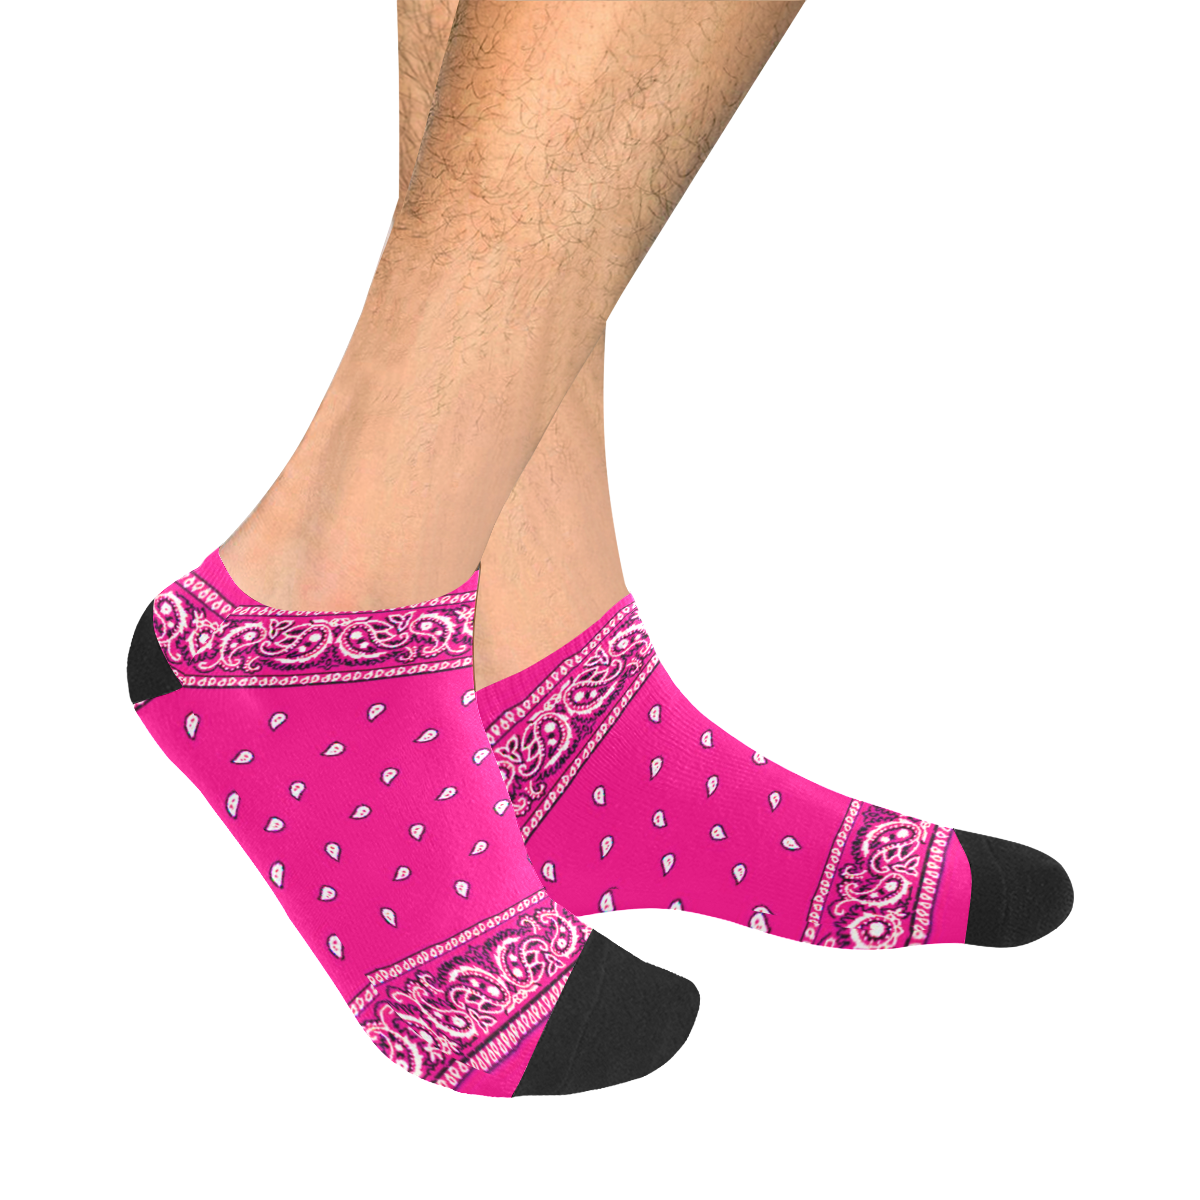 KERCHIEF PATTERN PINK Men's Ankle Socks